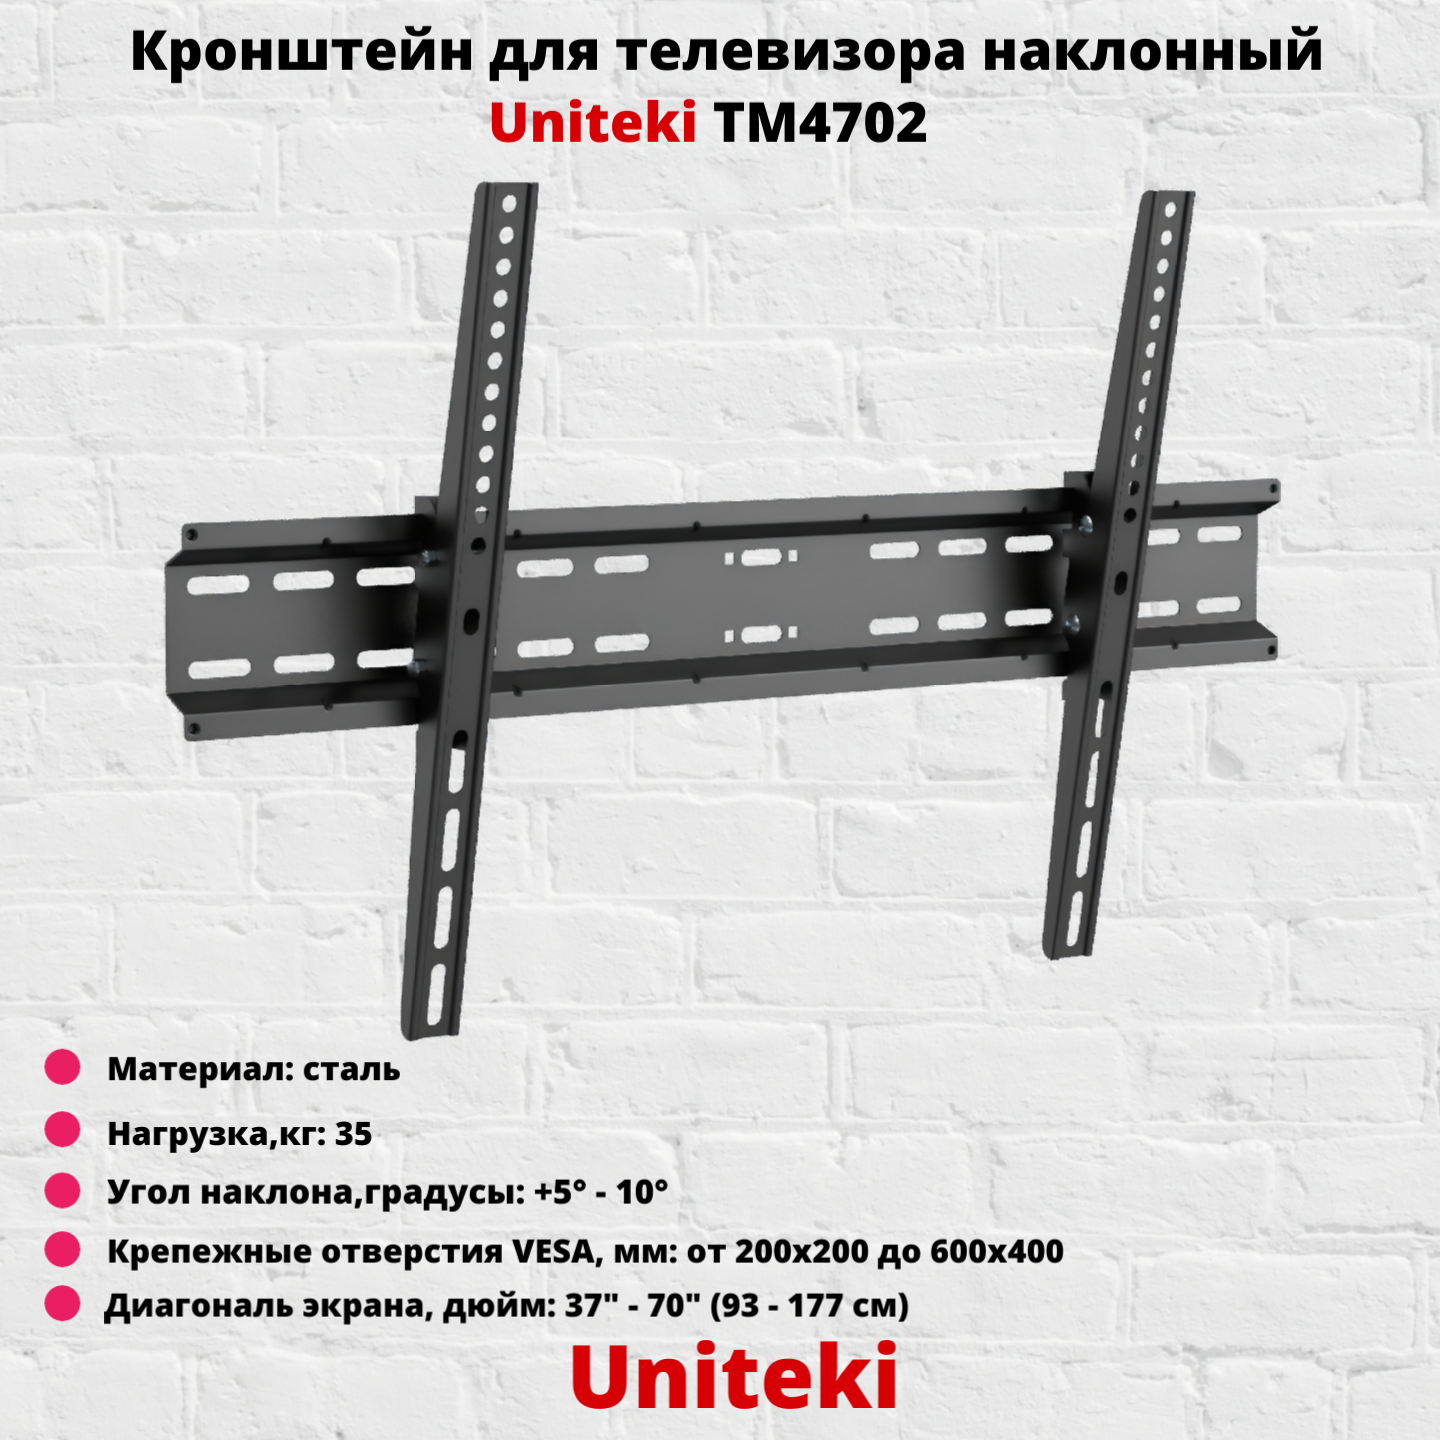 Кронштейн для телевизора на стену наклонный с диагональю 37"-70" UniTeki TM4702B черный